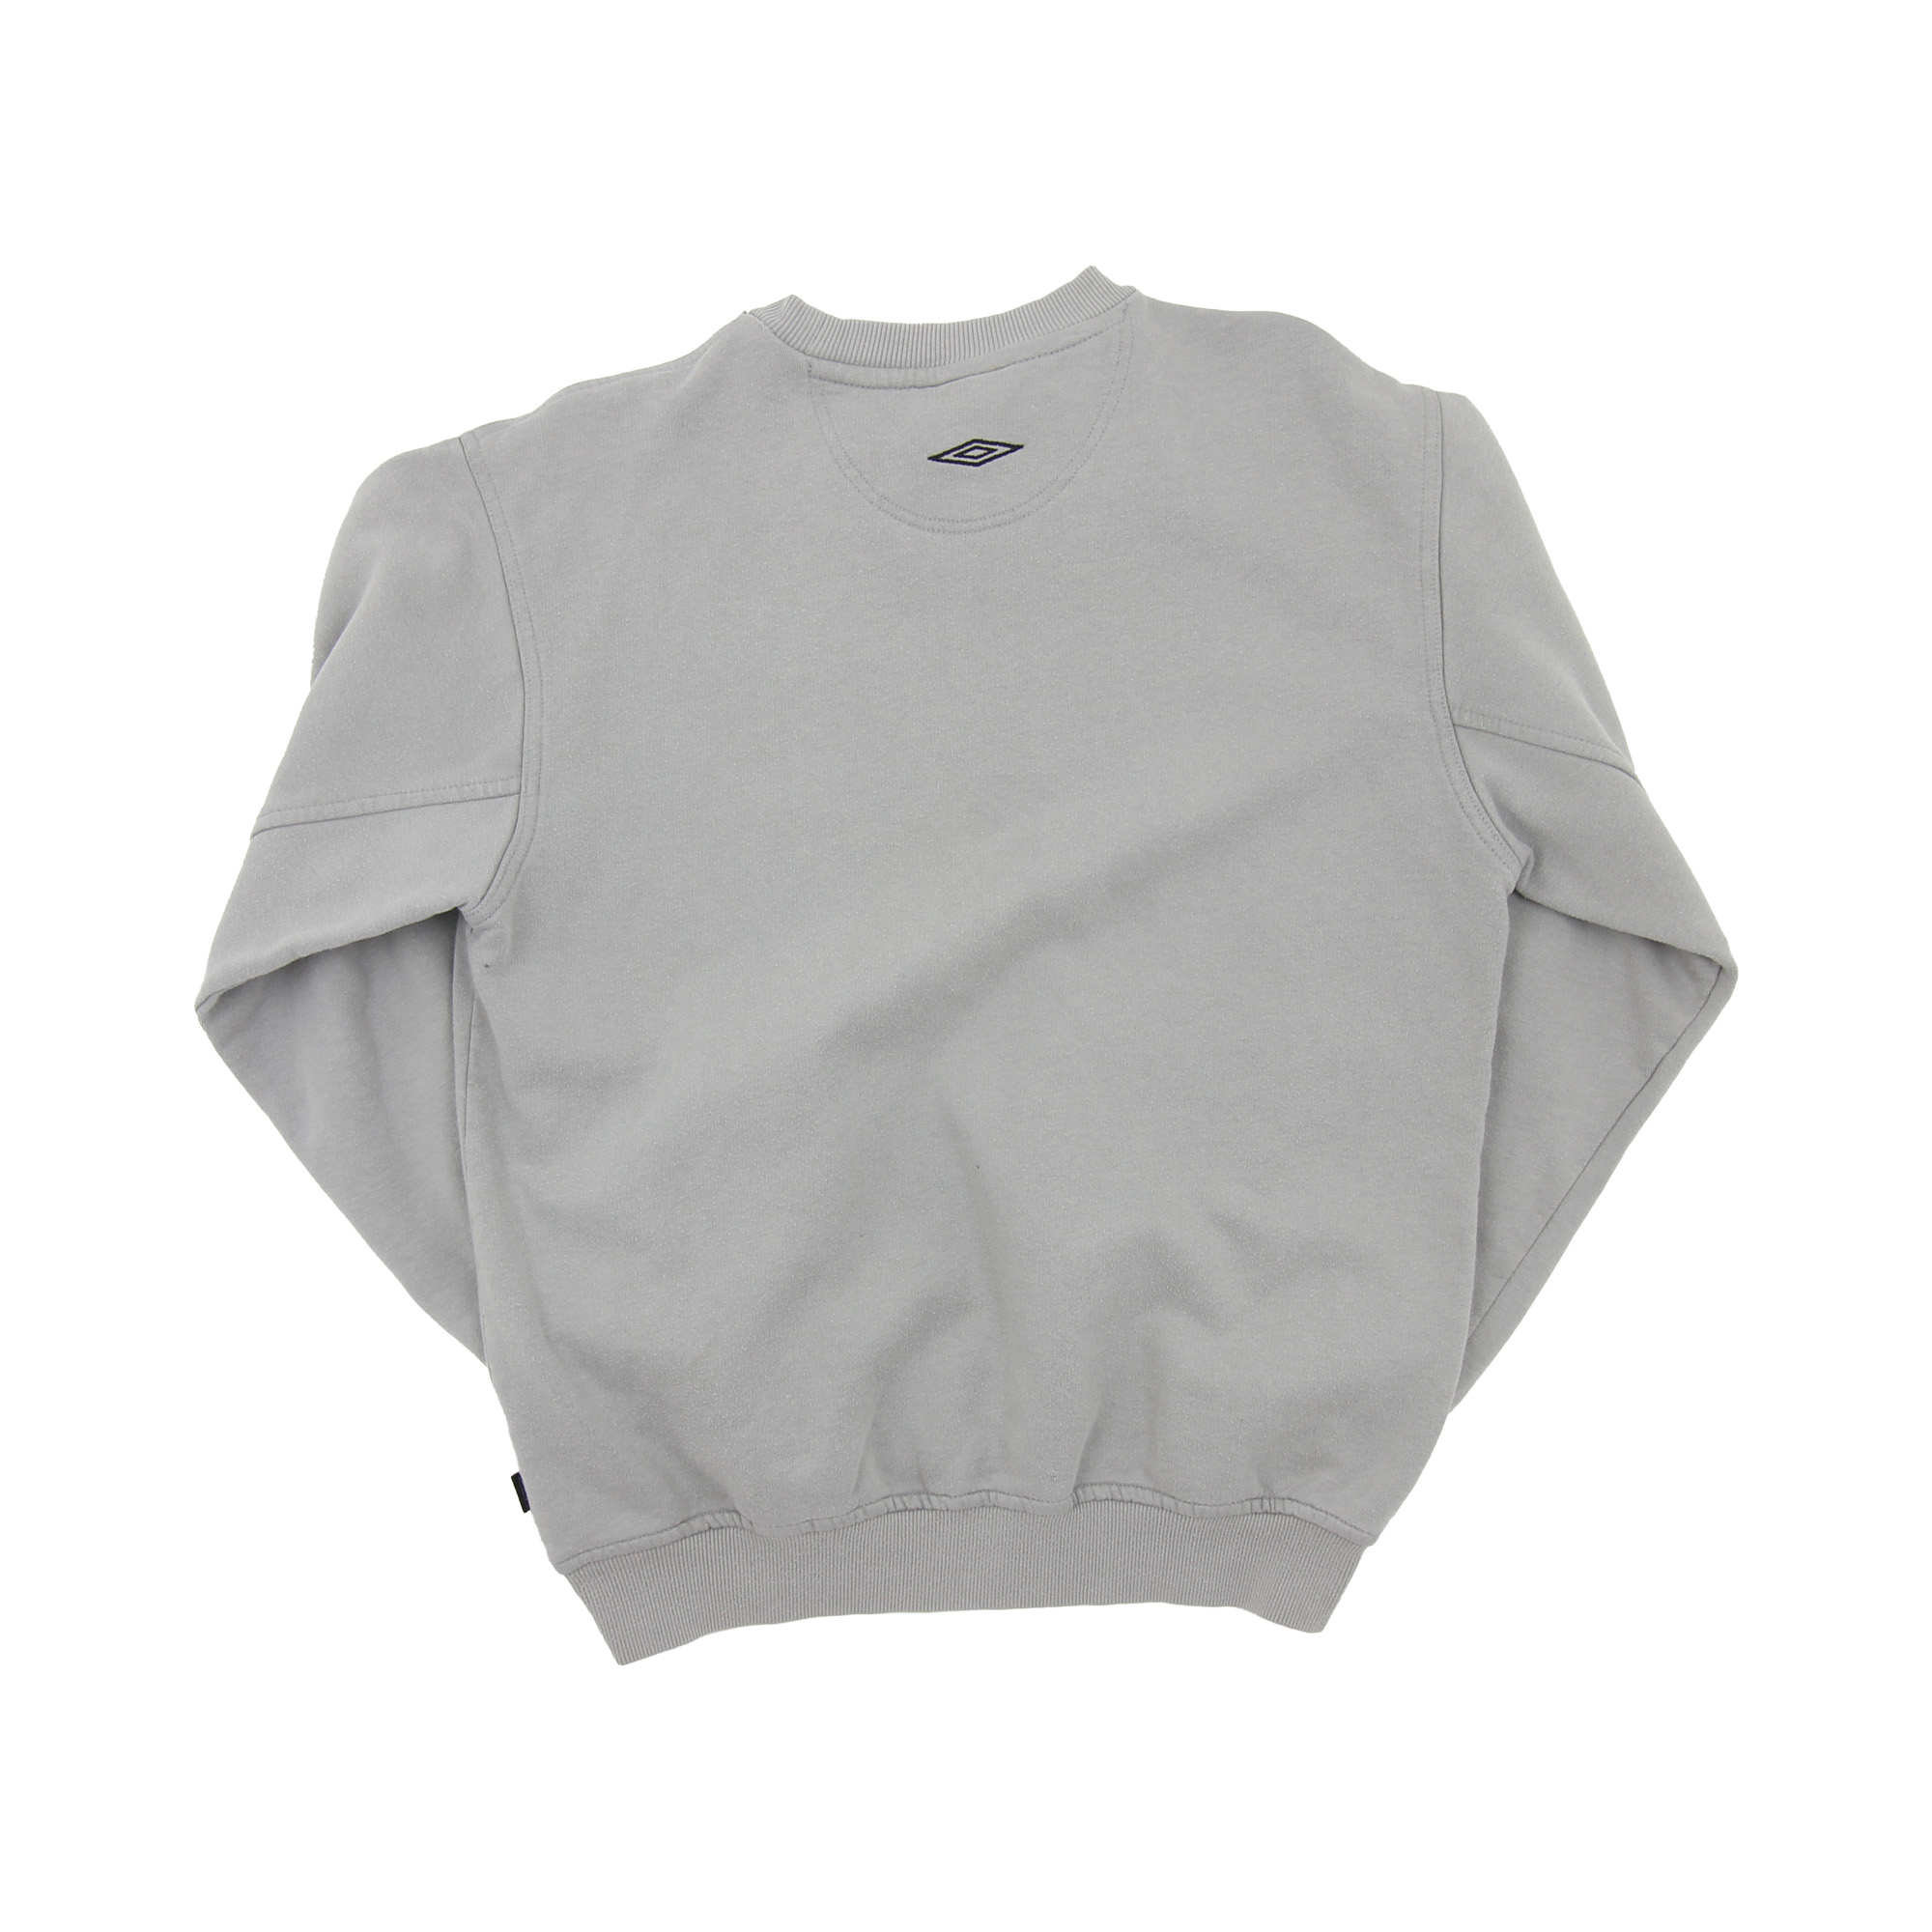 Umbro Sweatshirt Grey -  M